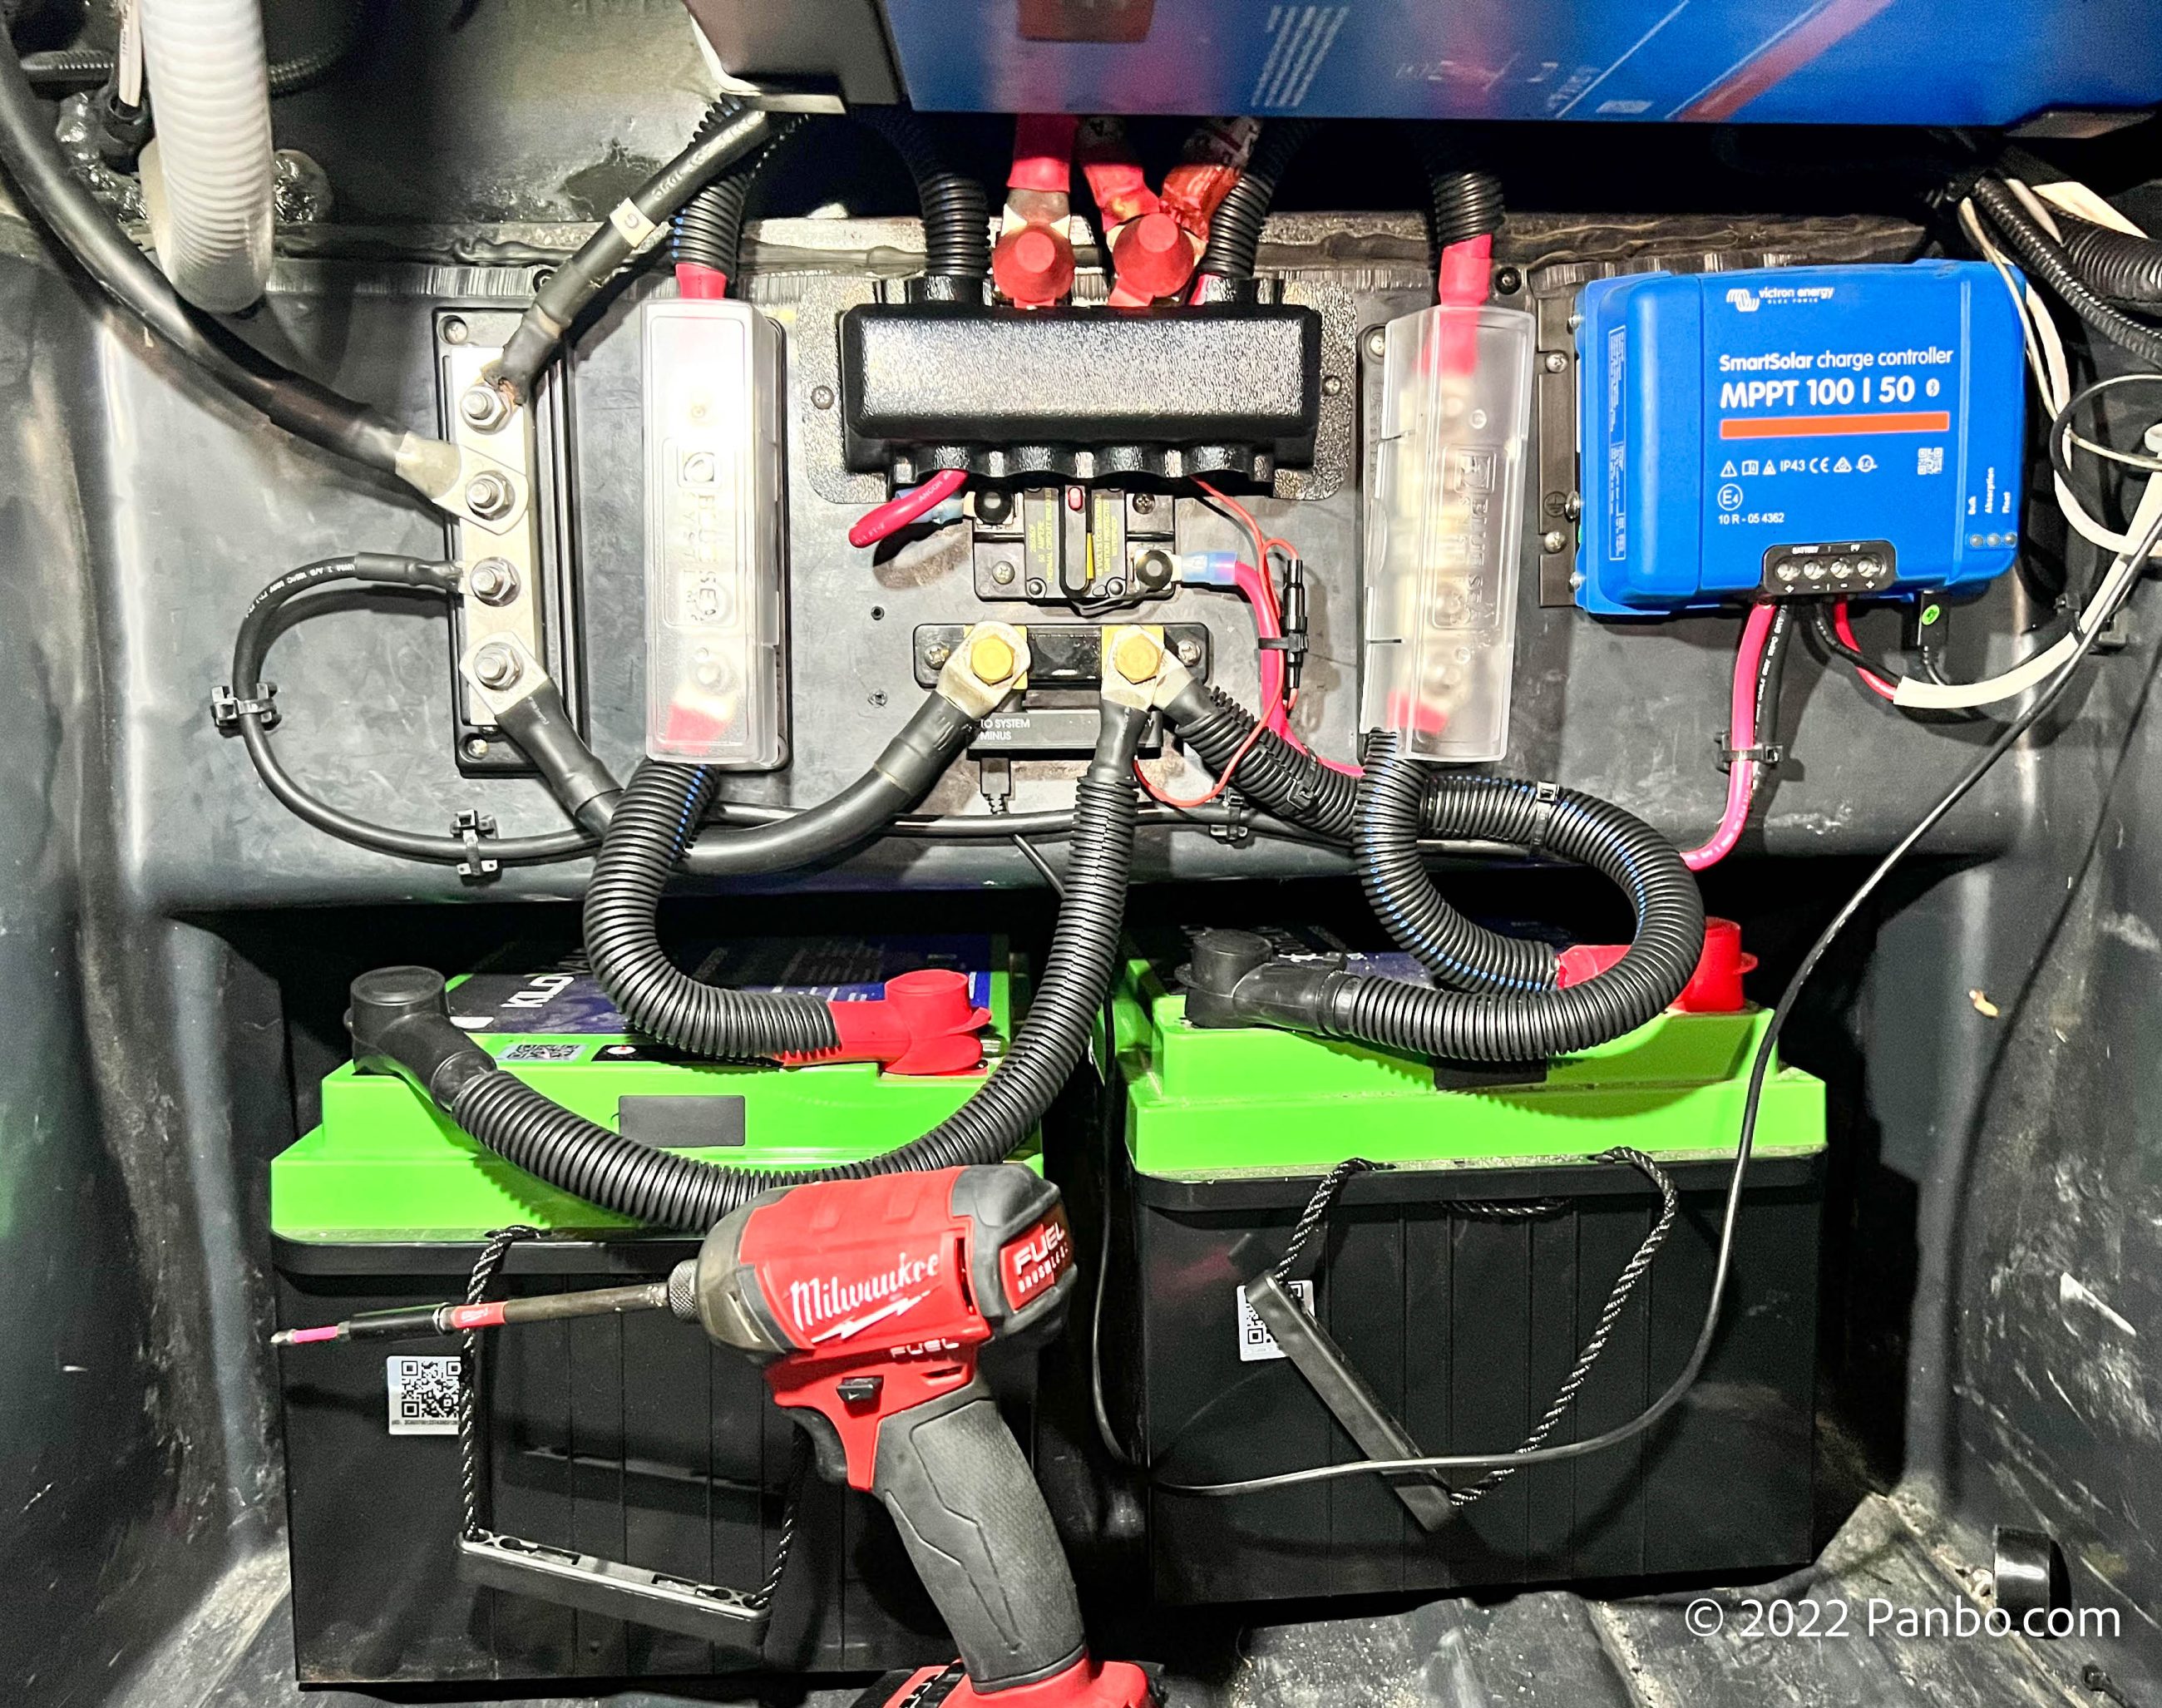 KiloVault HLX+ Batteries tested, power aplenty - Panbo